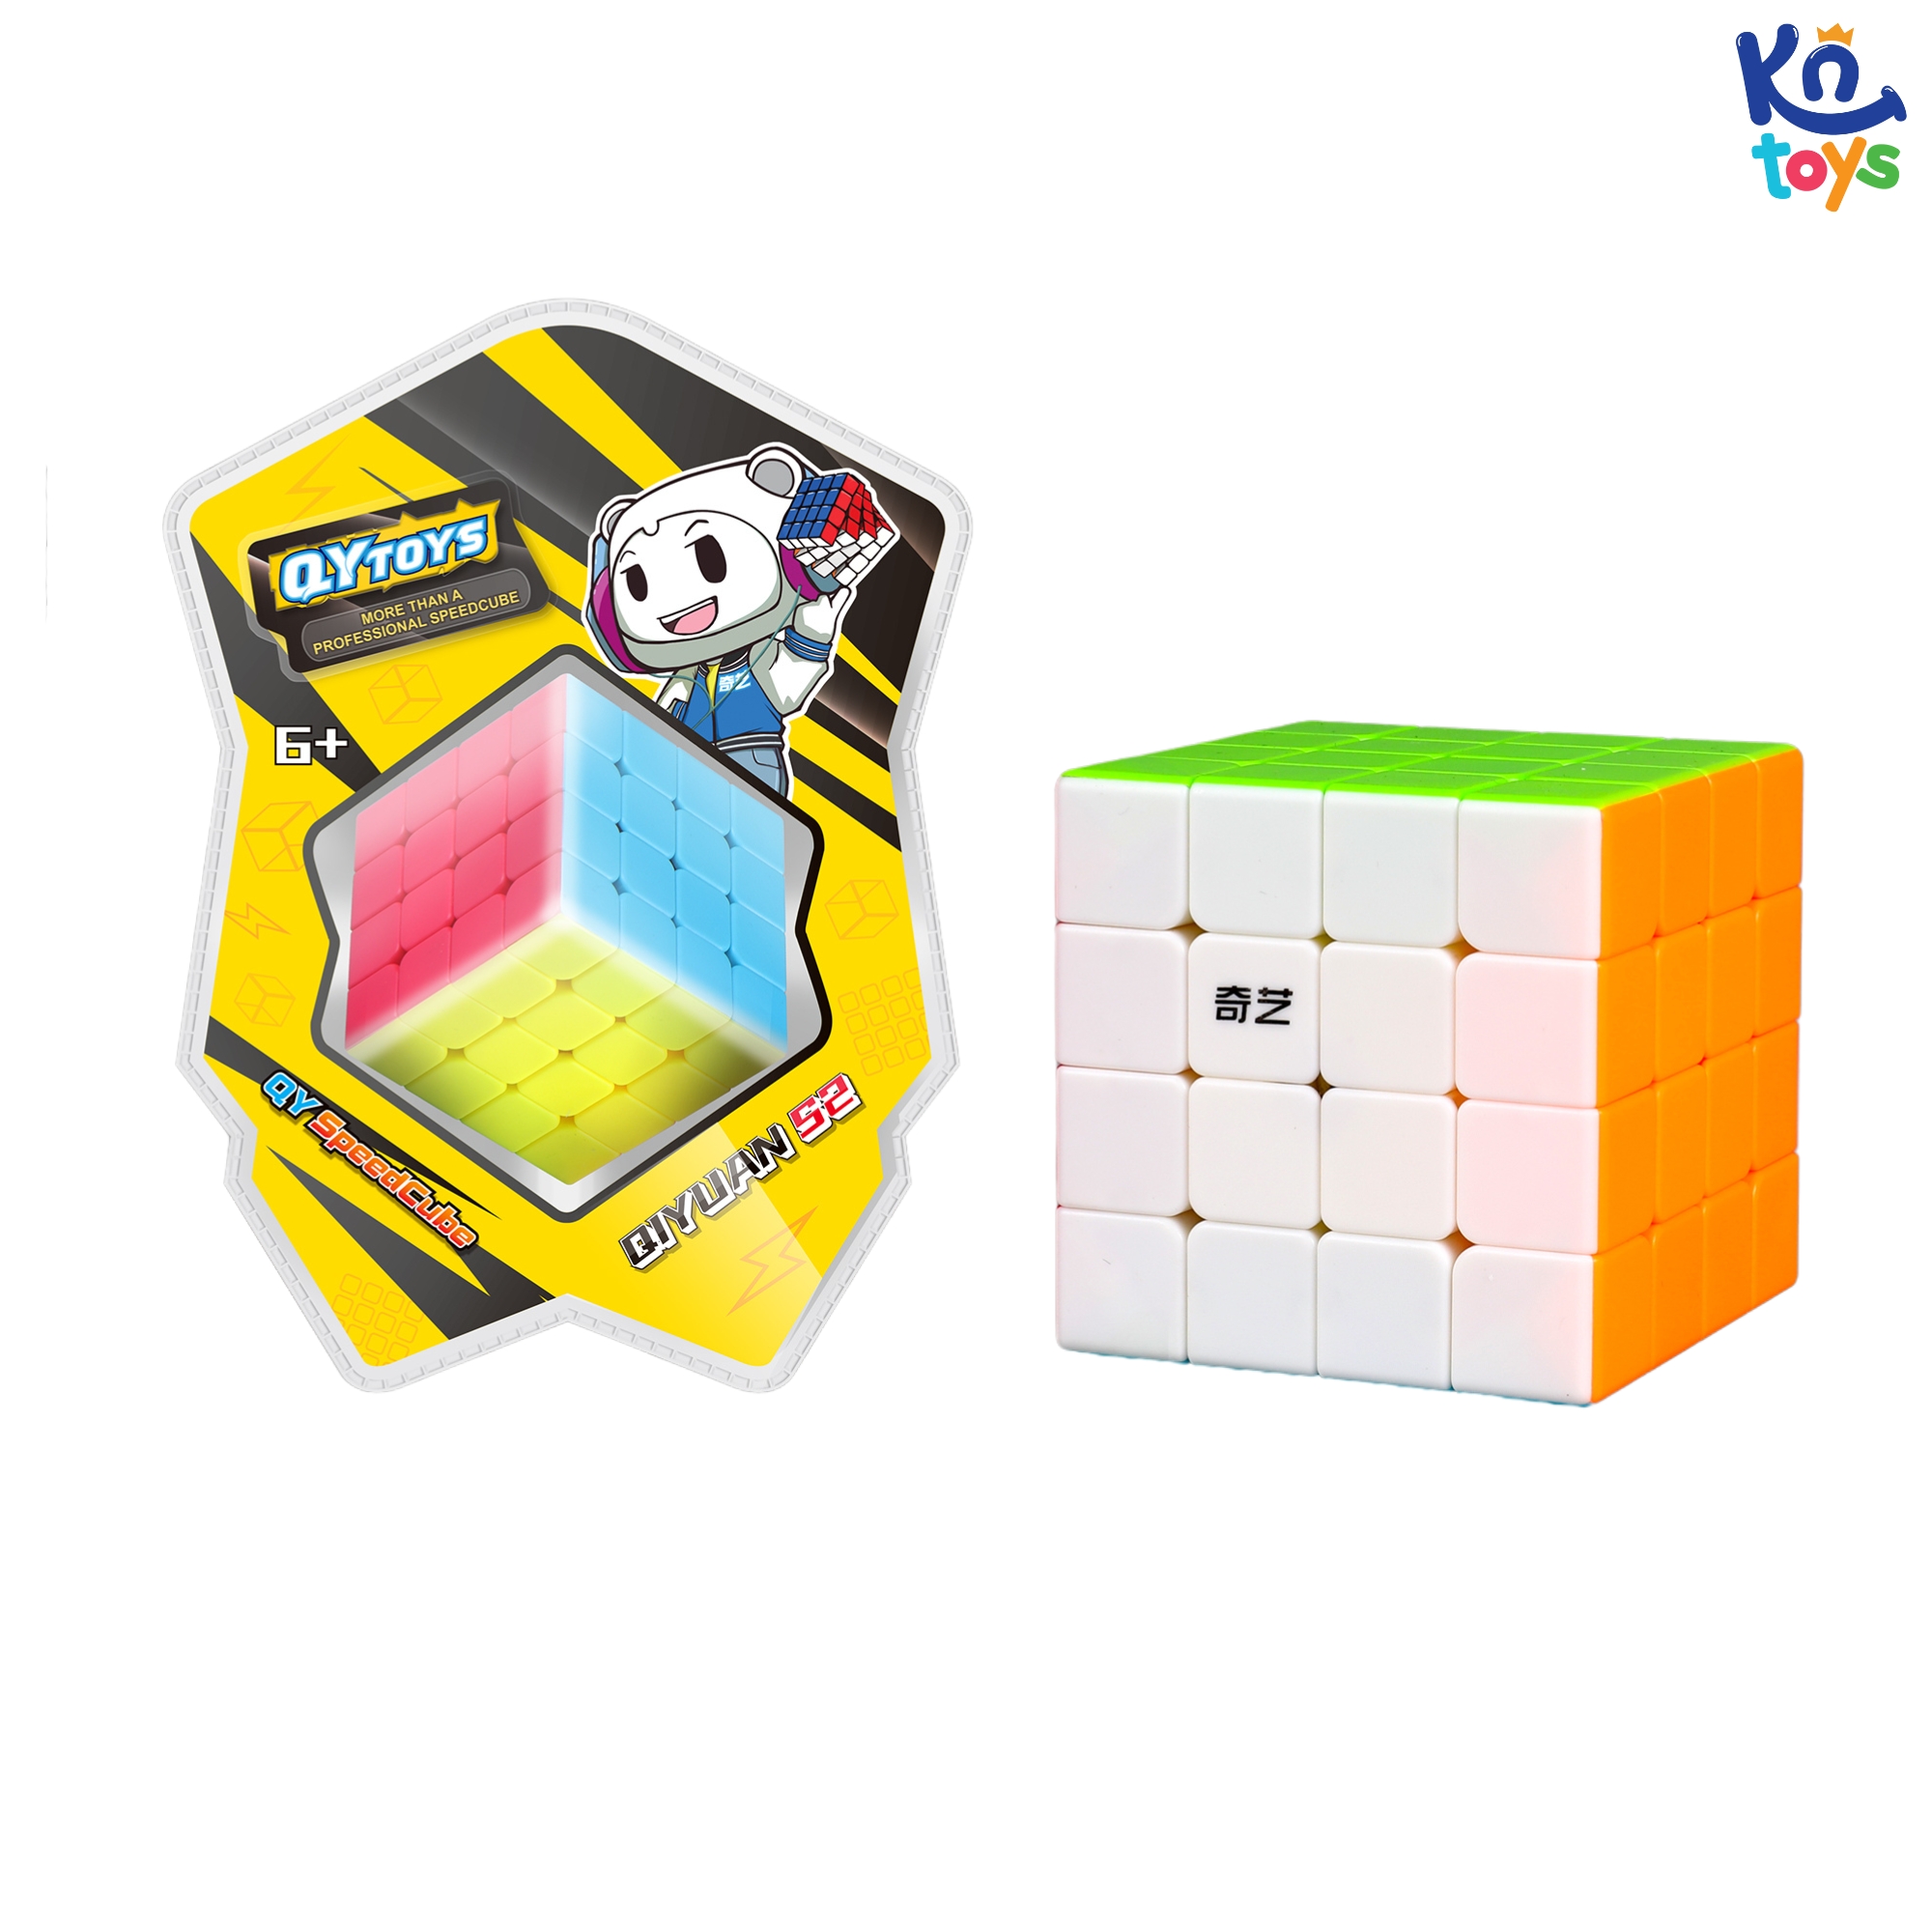 Đồ chơi trí tuệ Rubik Qiyi – Phiên bản không viền Stickerless (các biến thể)